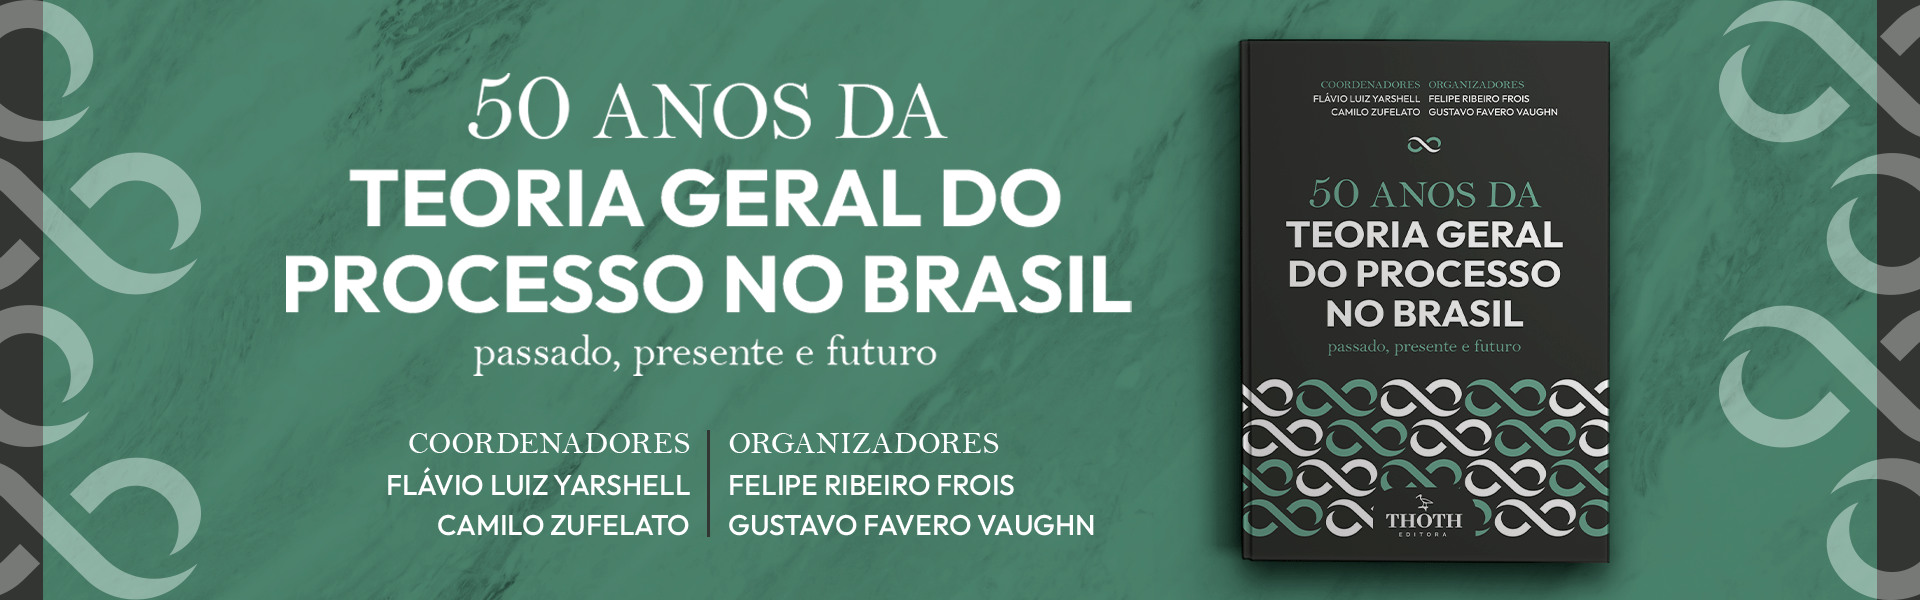 A RAZOÁVEL DURAÇÃO DO PROCESSO50 ANOS DA TEORIA GERAL DO PROCESSO NO BRASIL: PASSADO, PRESENTE E FUTURO